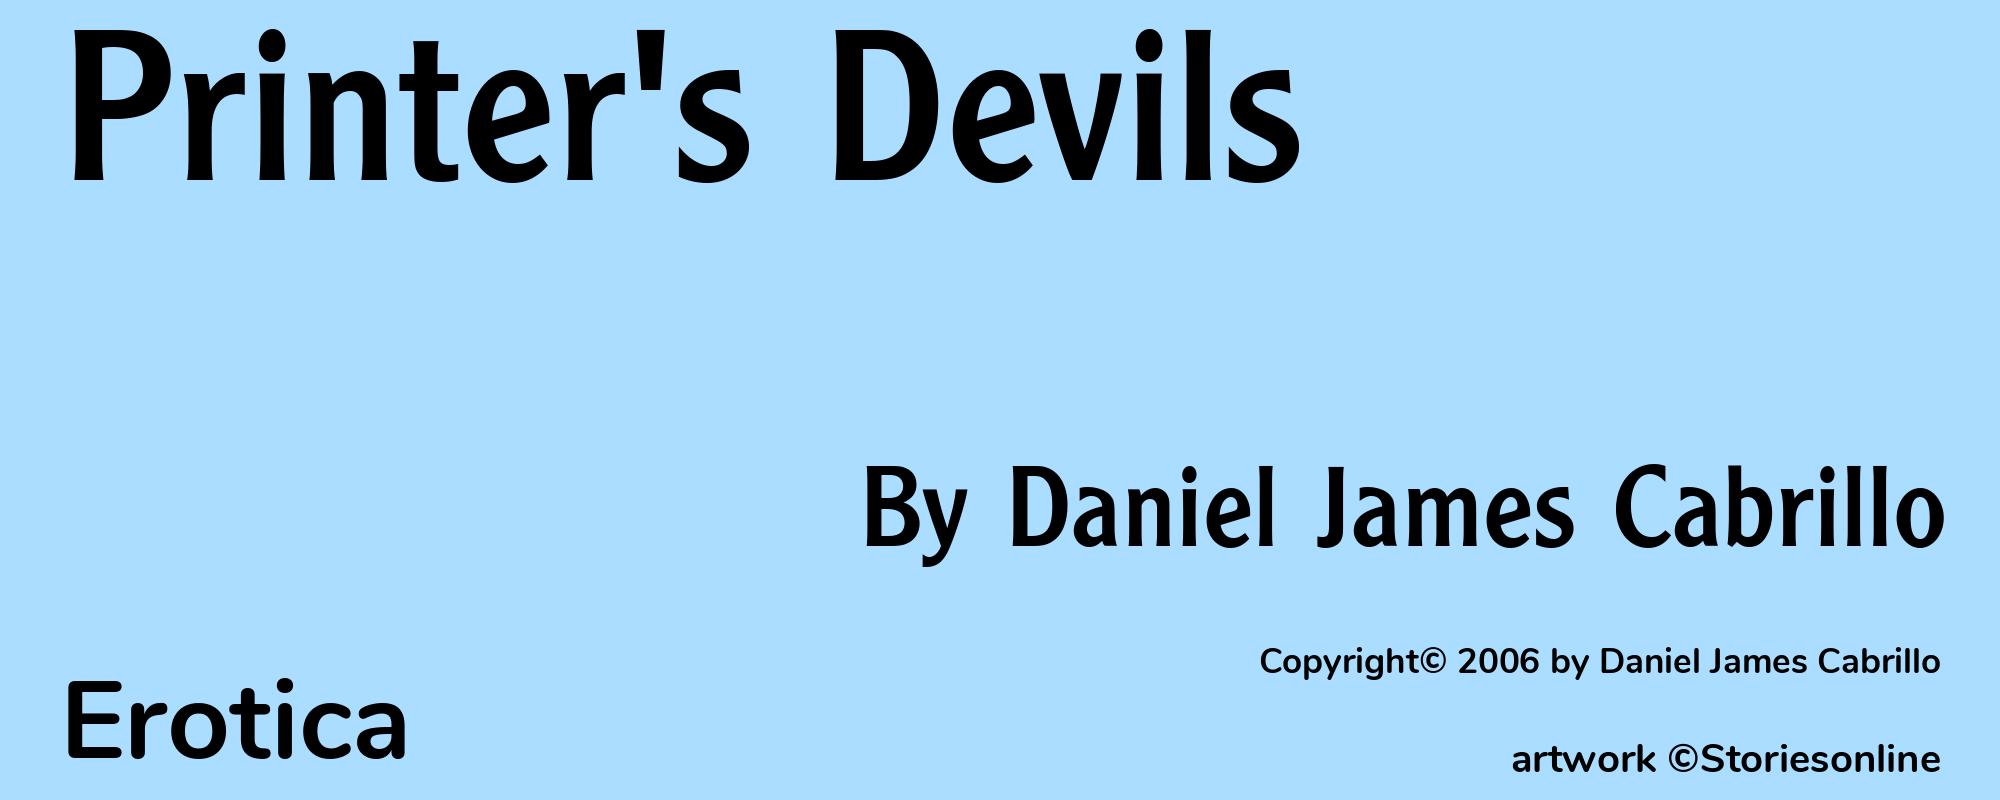 Printer's Devils - Cover